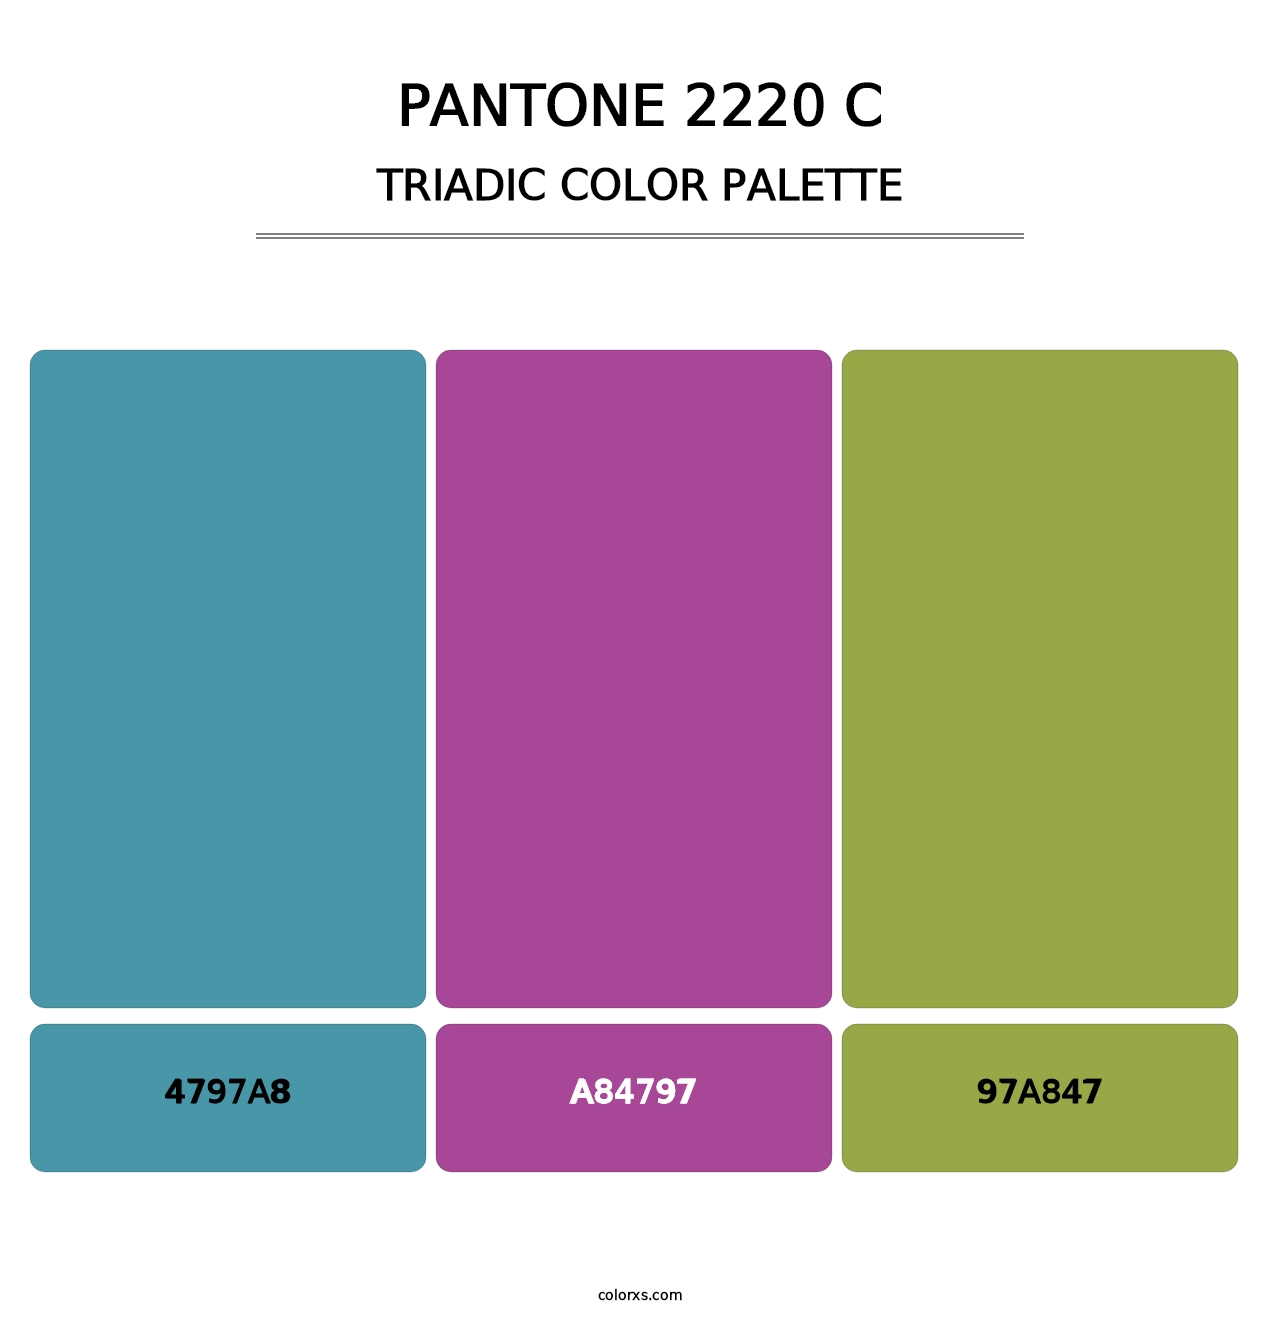 PANTONE 2220 C - Triadic Color Palette